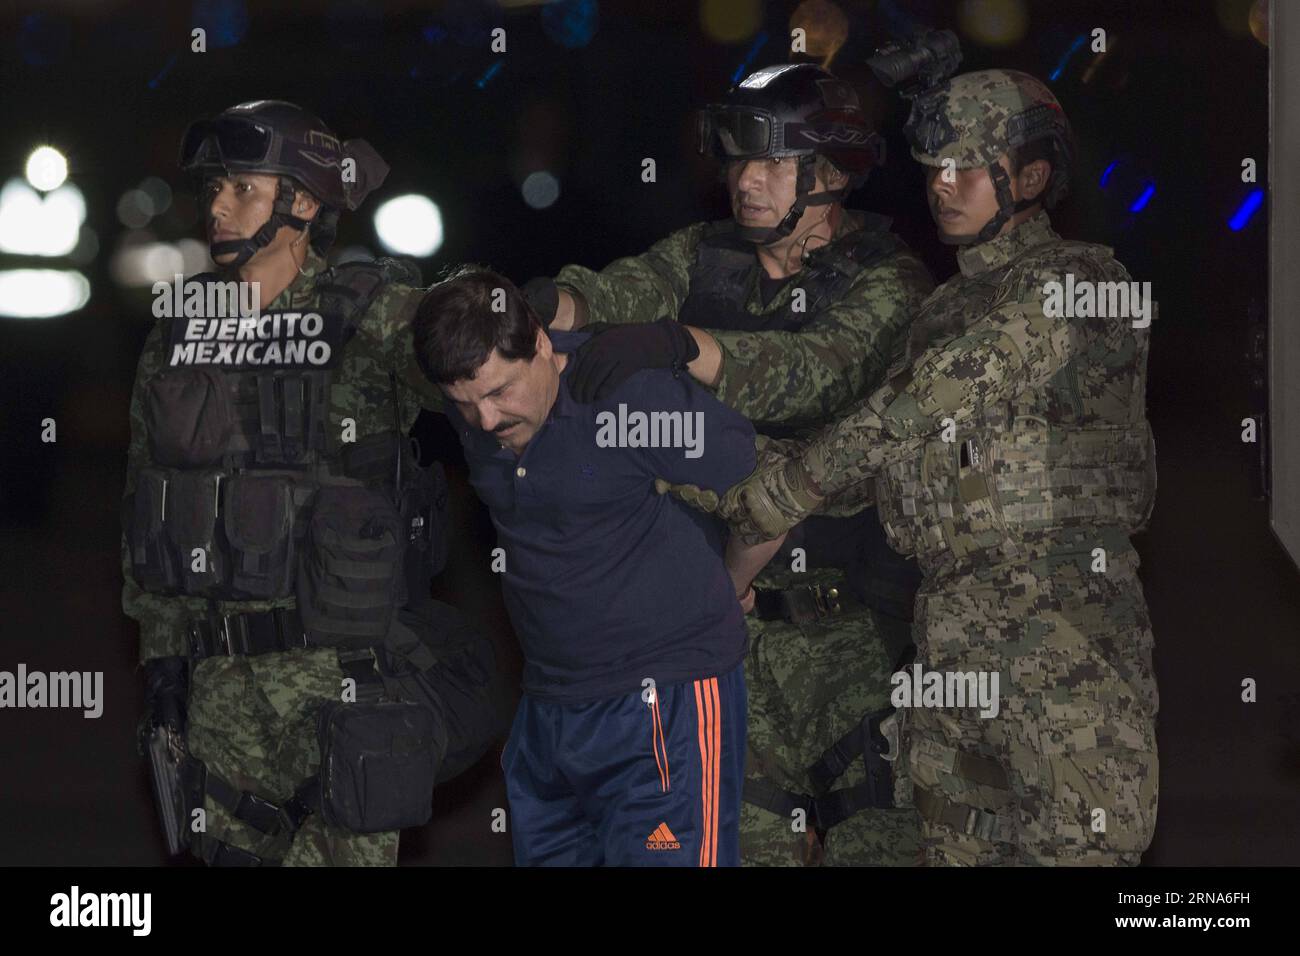 (160109) -- MEXICO, 8 janvier 2016 -- des soldats escortent Joaquin Guzman Loera, alias El Chapo , à son arrivée au hangar du bureau du procureur général, à Mexico, capitale du Mexique, le 8 janvier 2016. Après un raid tôt le matin dans la ville de Los Mochis, dans l État du Sinaloa, dans le nord-ouest du Mexique, par la police et les marines mexicaines vendredi, le chef du cartel du Sinaloa, Joaquin Guzman Loera, a été repris, six mois après sa deuxième évasion de prison. MEXICO-MEXICO CITY-SECURITY-GUZMAN LOERA-RECAPTURE AlejandroxAyala PUBLICATIONxNOTxINxCHN 160109 Mexico Jan 8 2016 soldats escorte Joaquin Guzman Lo Banque D'Images